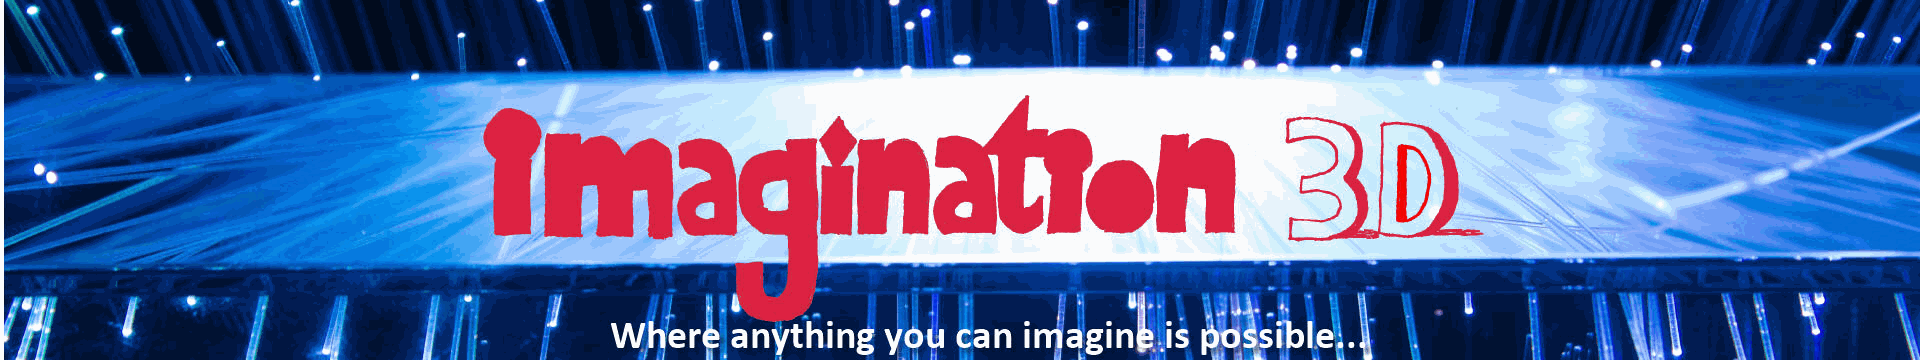 Imagination-3D